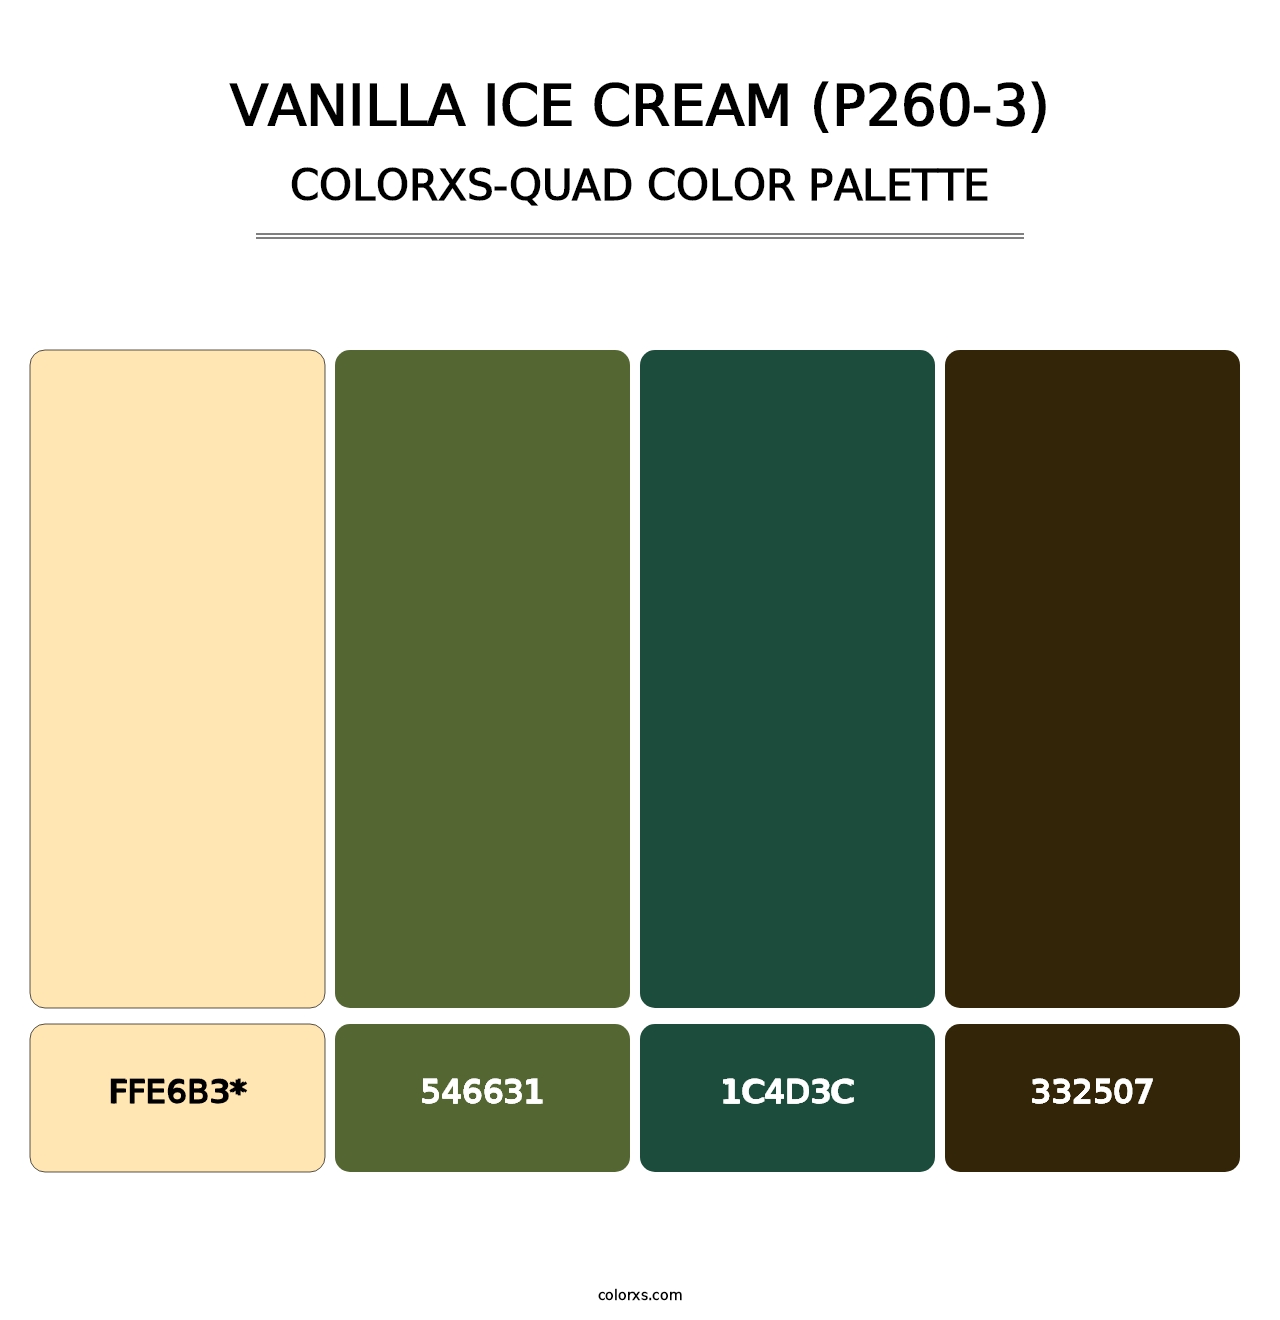 Vanilla Ice Cream (P260-3) - Colorxs Quad Palette